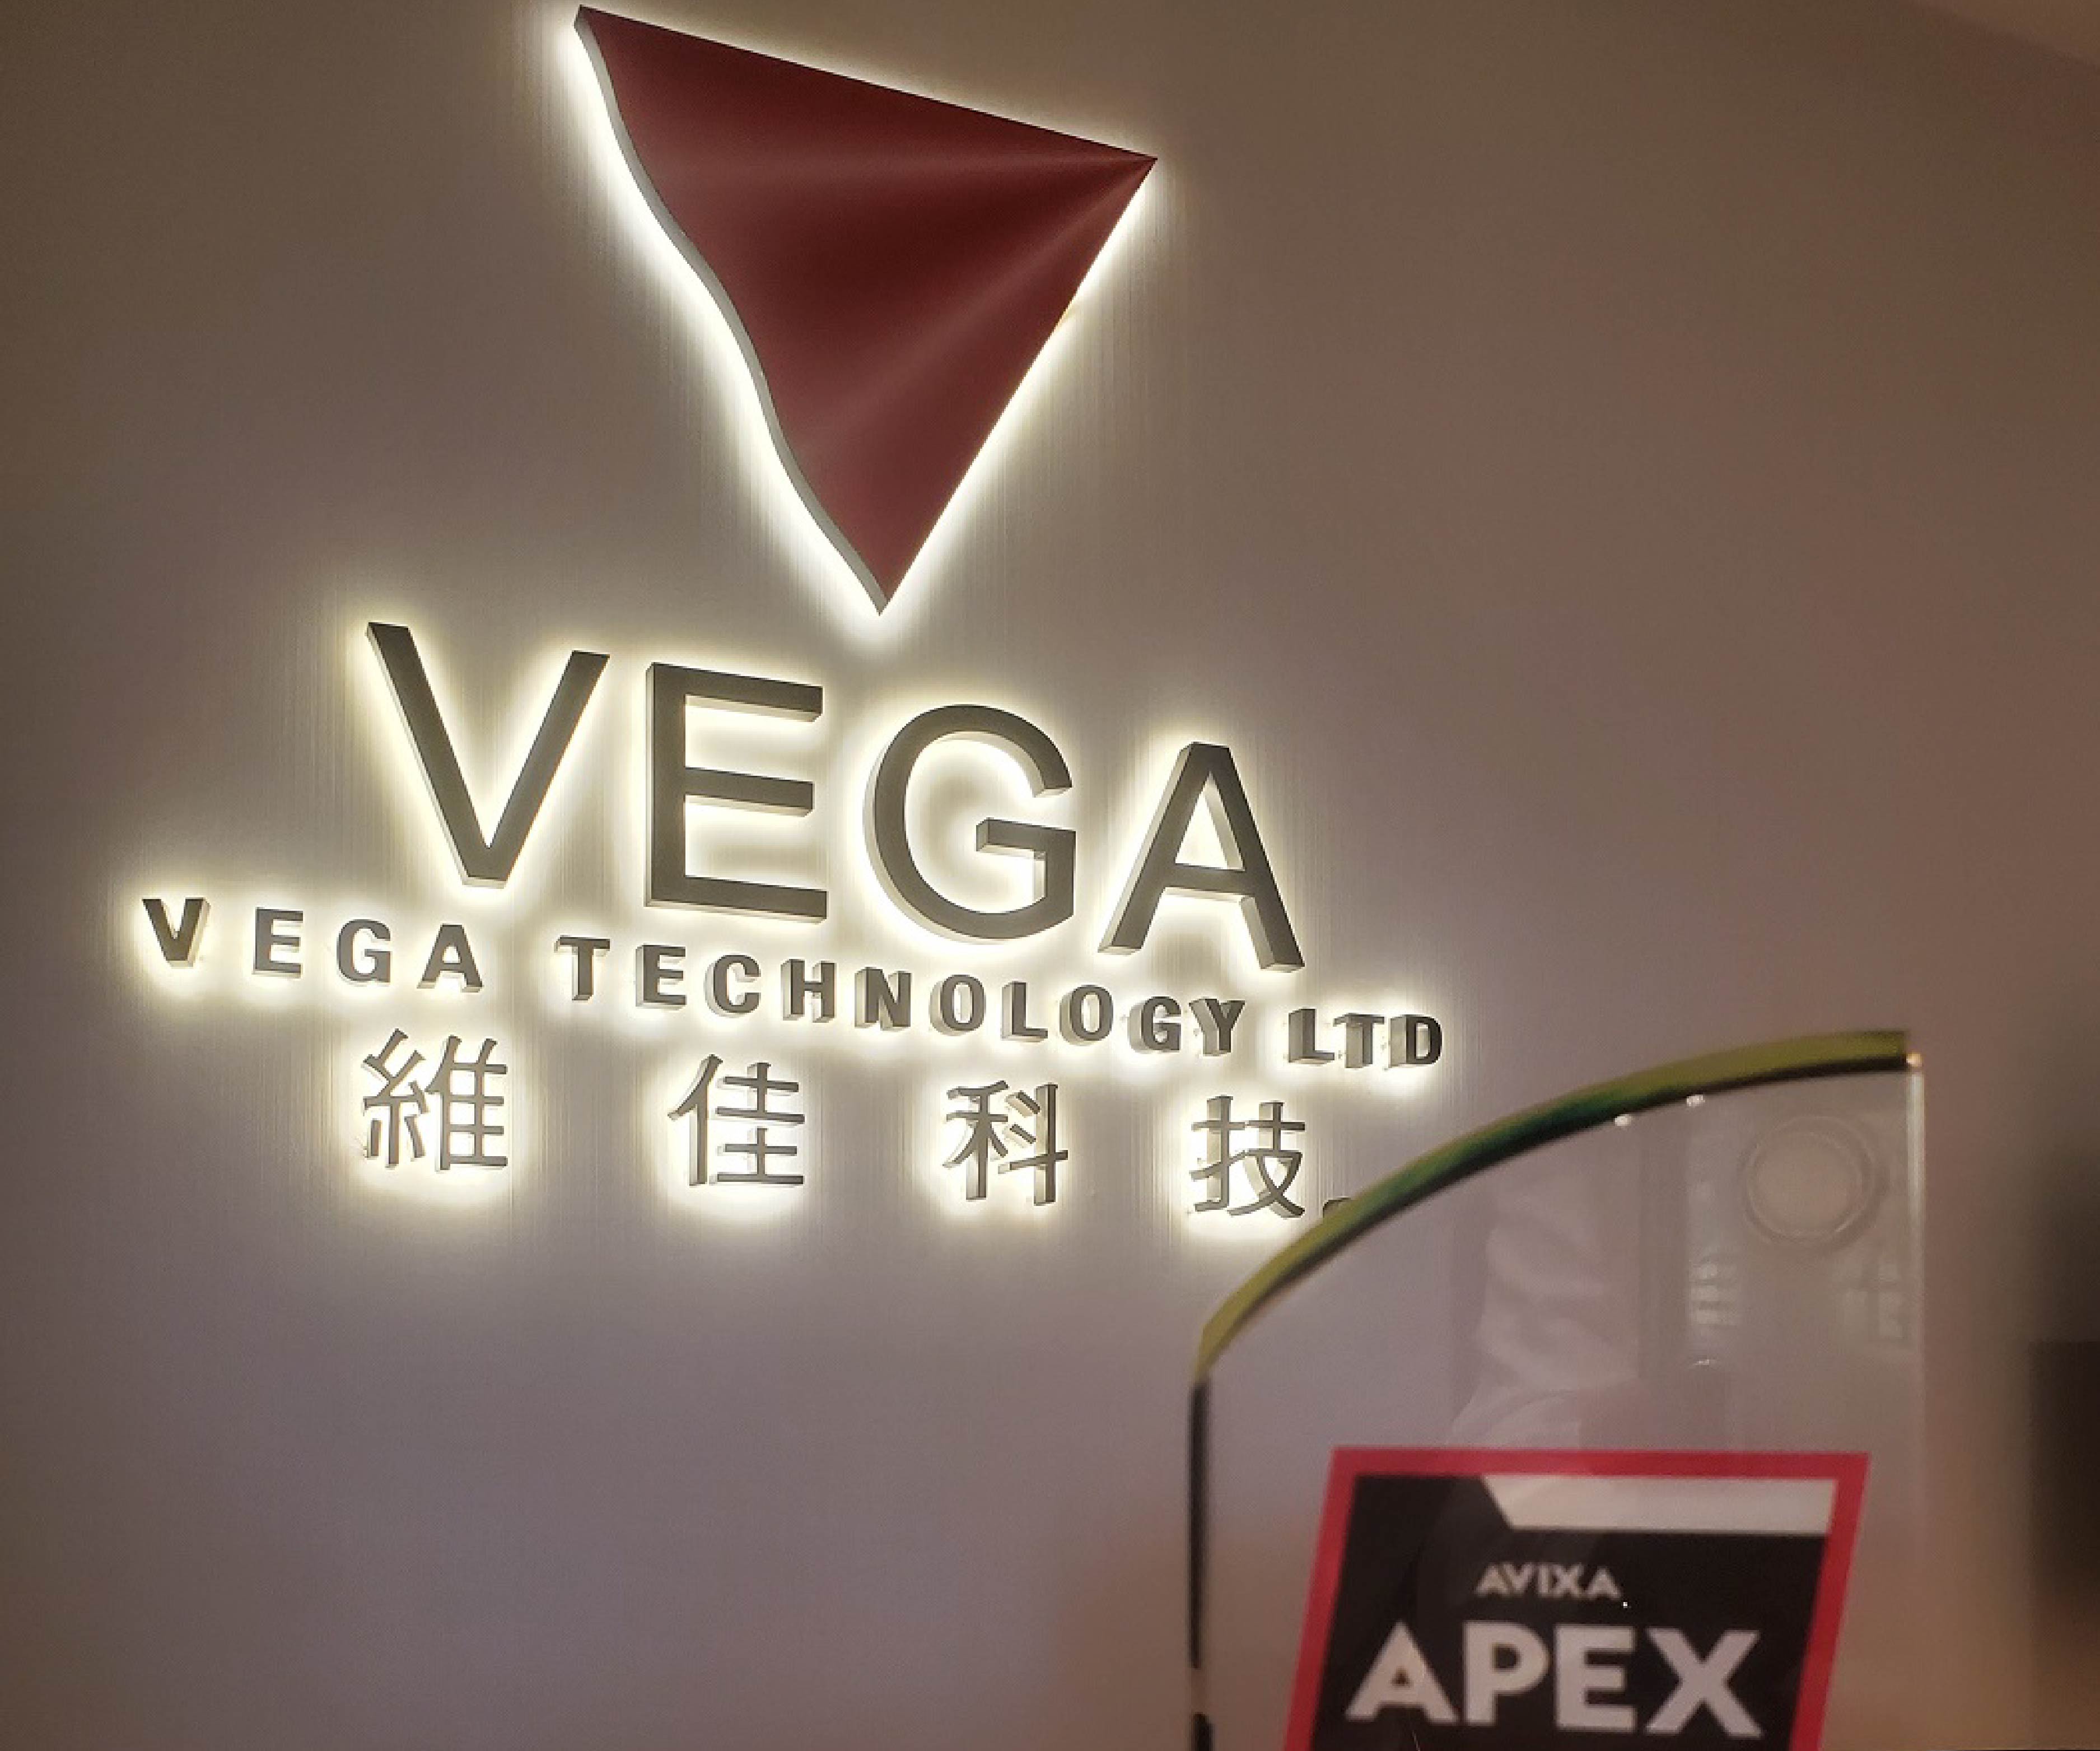 維嘉全球 Vega Global 連續五年 AVIXA 評為卓越 AV 供應商 (APEx)